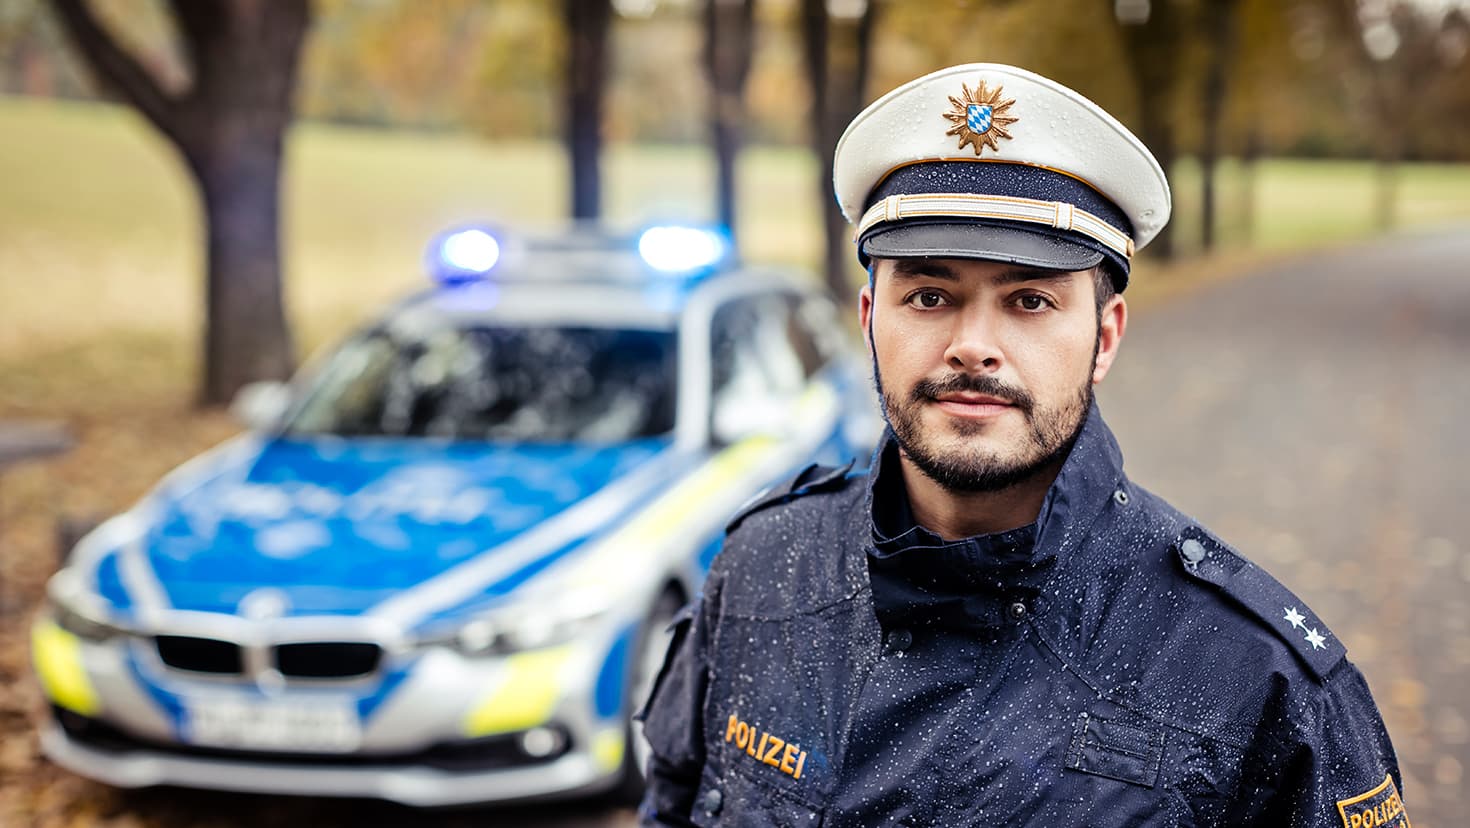 Bayerischer Polizist vor einem Streifenwagen. © Polizei Bayern